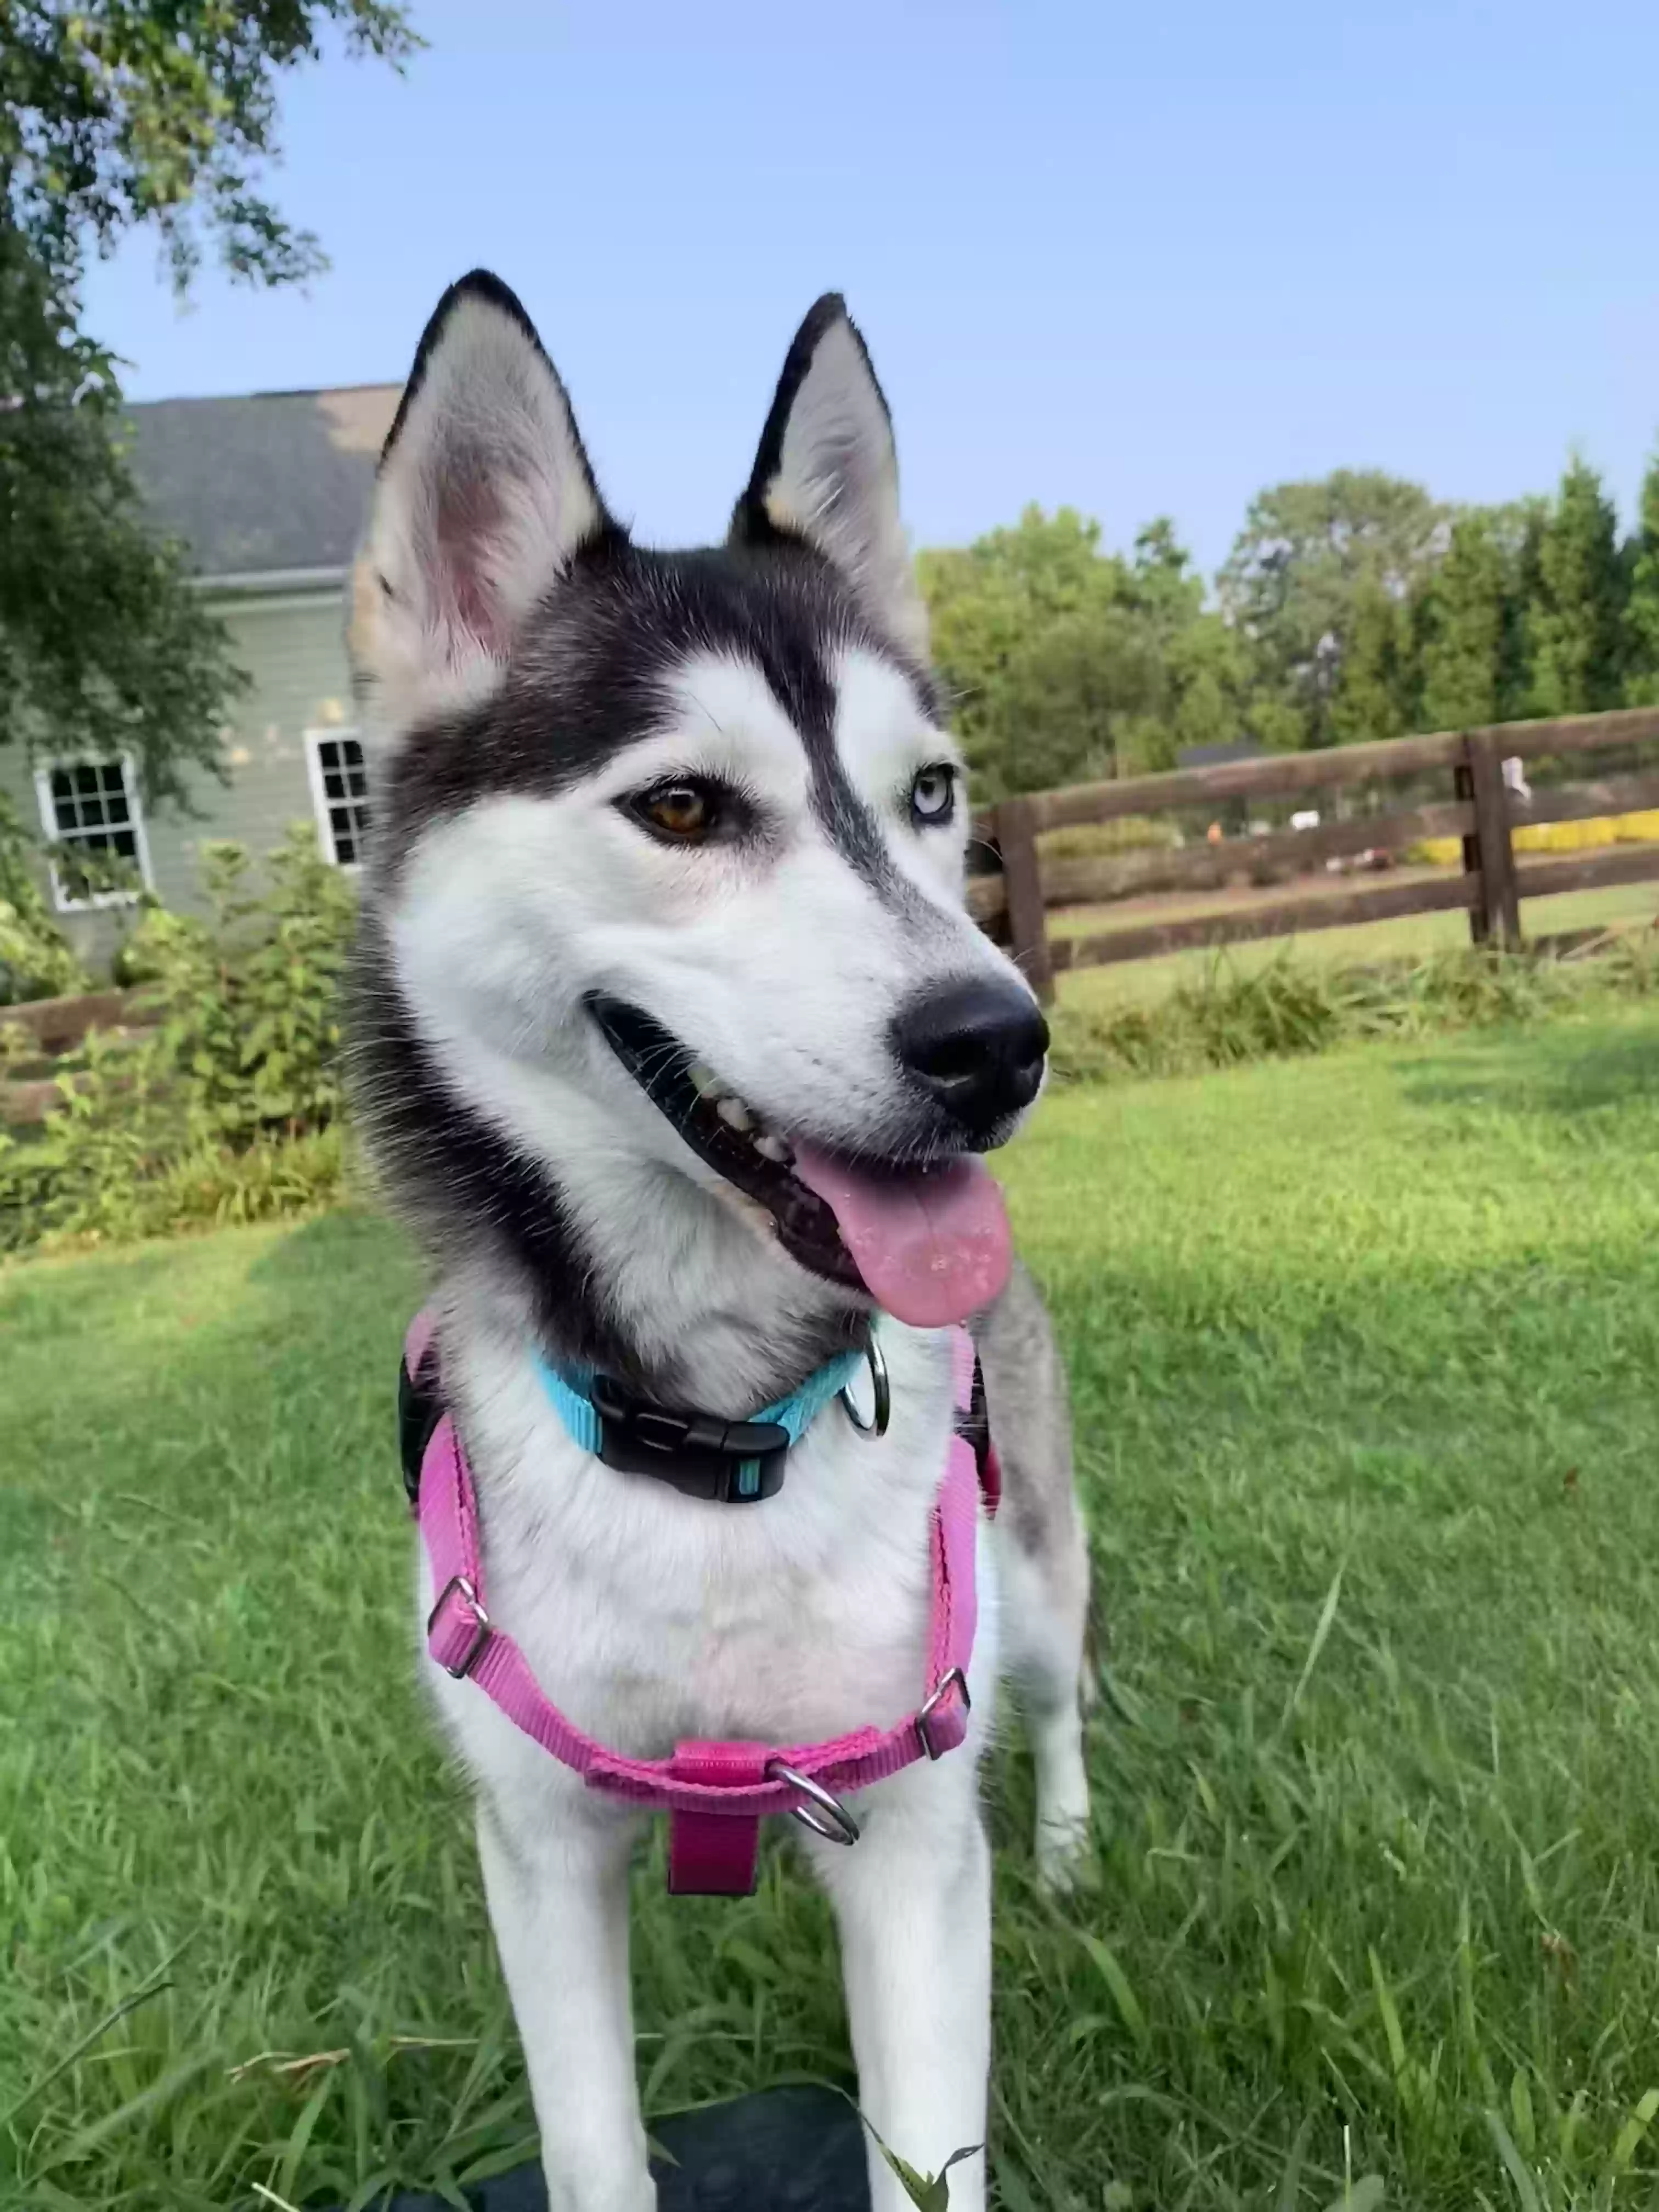 adoptable Dog in Canton,GA named Dahlia